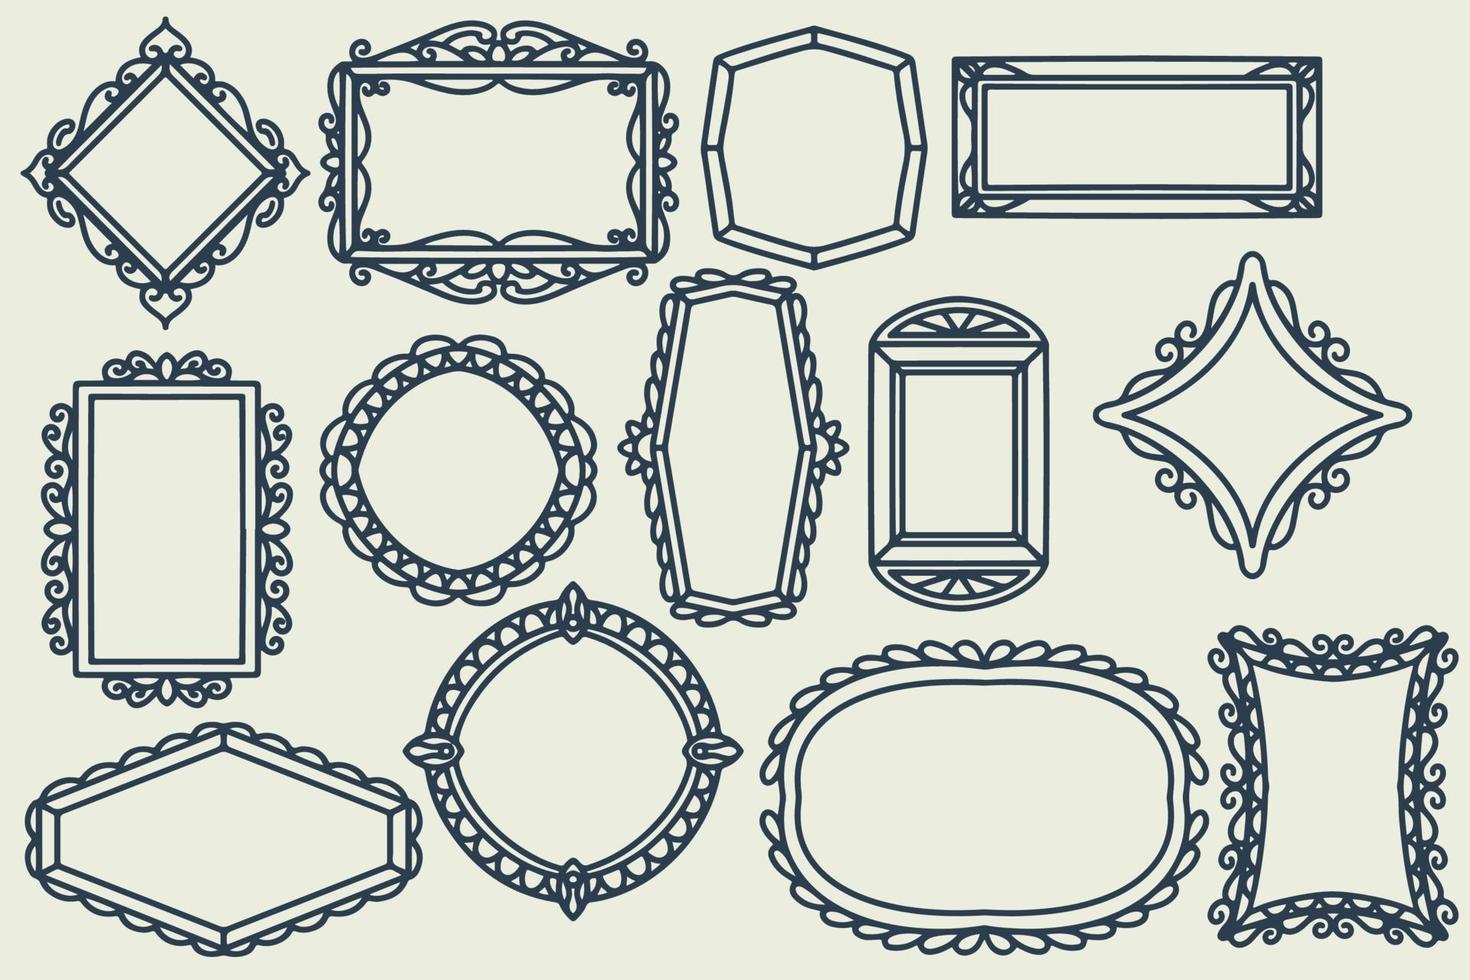 13 handgezeichnetes Rahmendekorationsset. sammlung von doodle-rahmen vektor